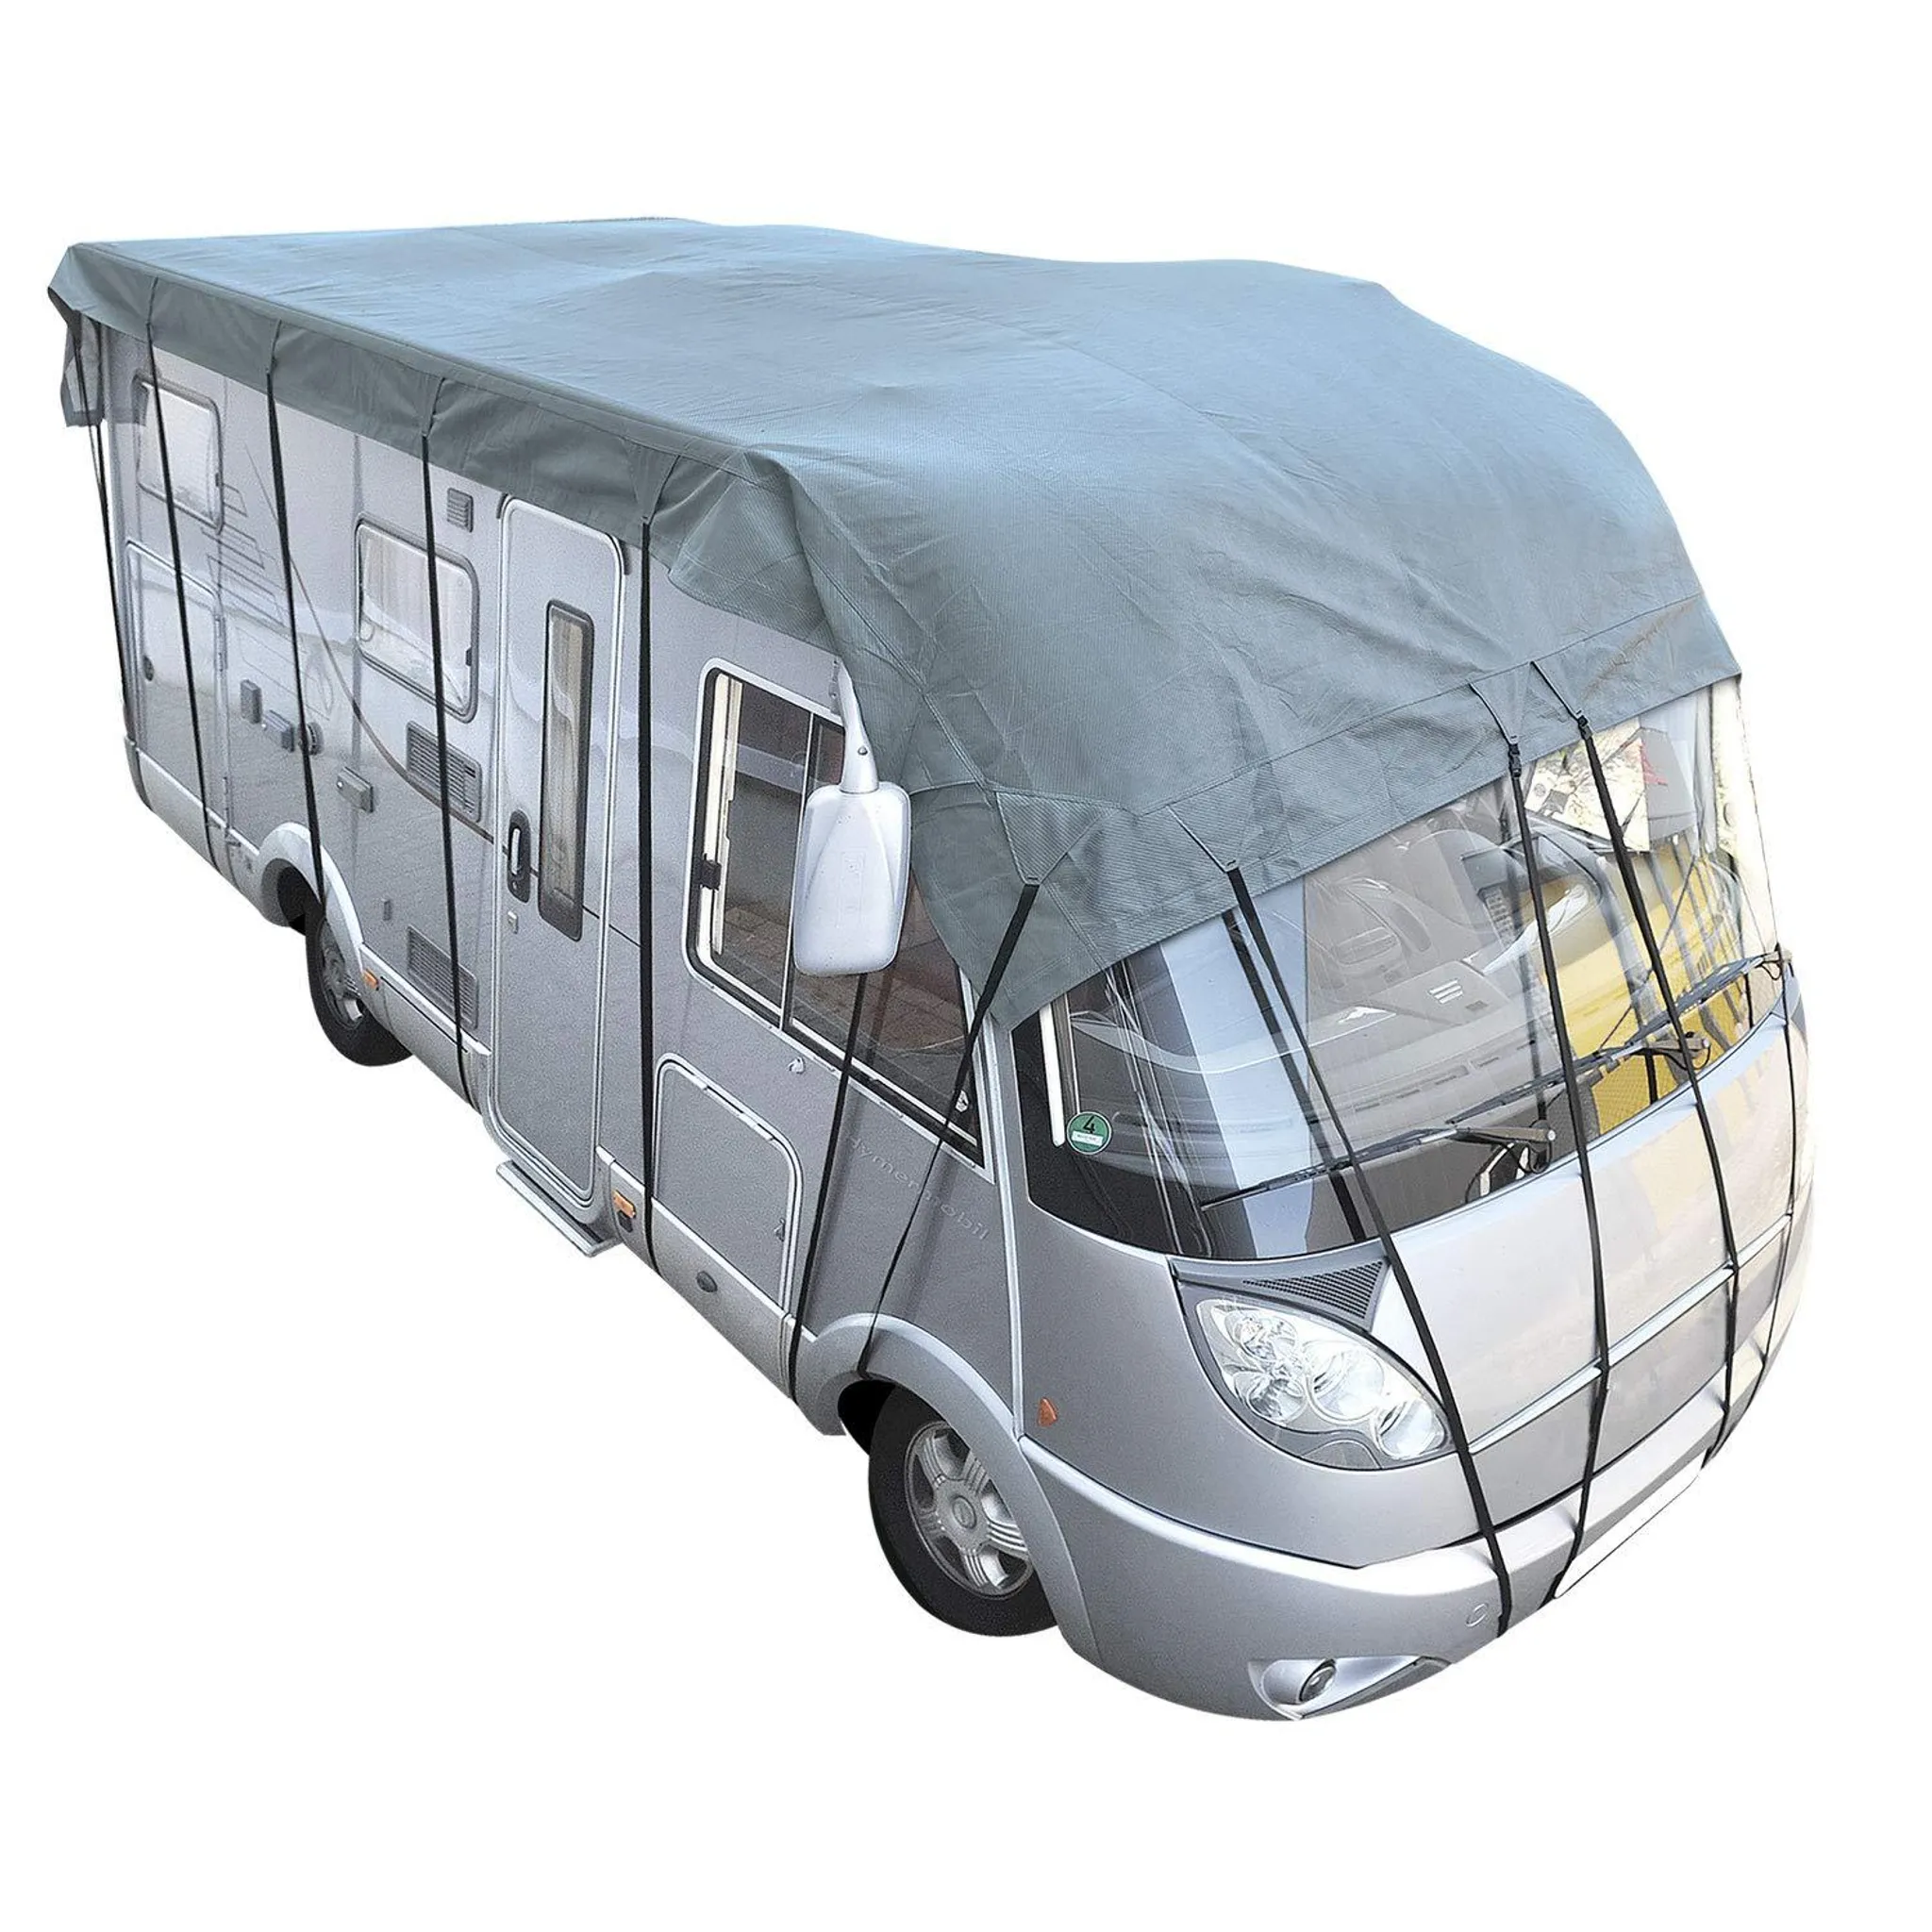 Wohnwagen Wohnmobil Schutzdach 230cm Breite 3-Lagen SFS Plane Caravan